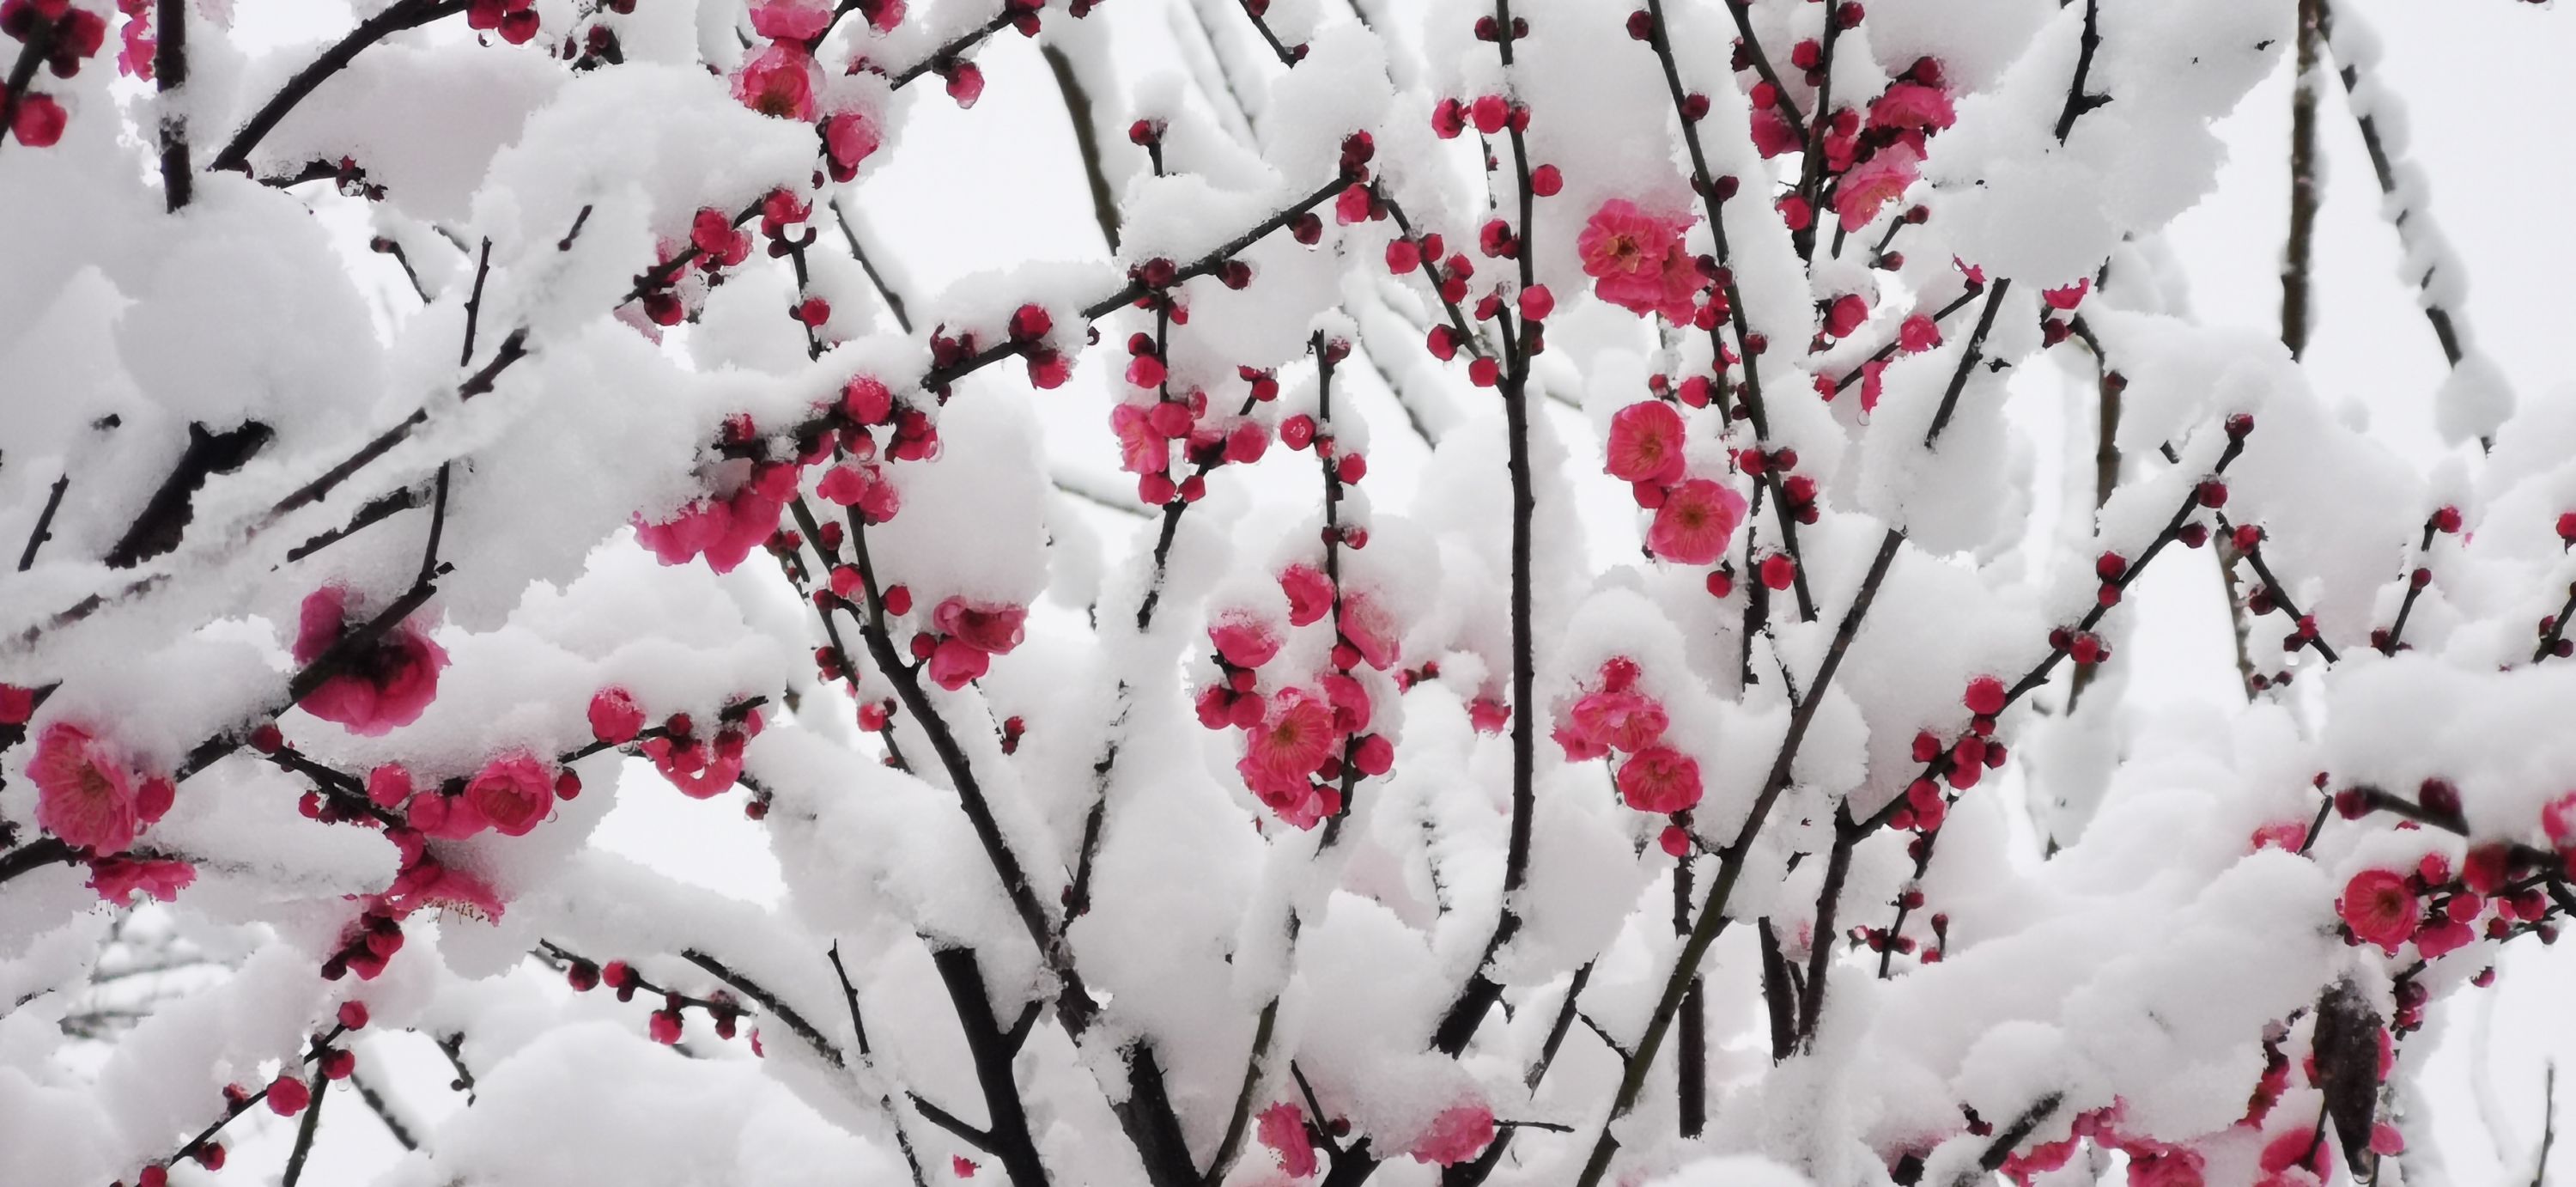 雪中红梅图片 唯美图片